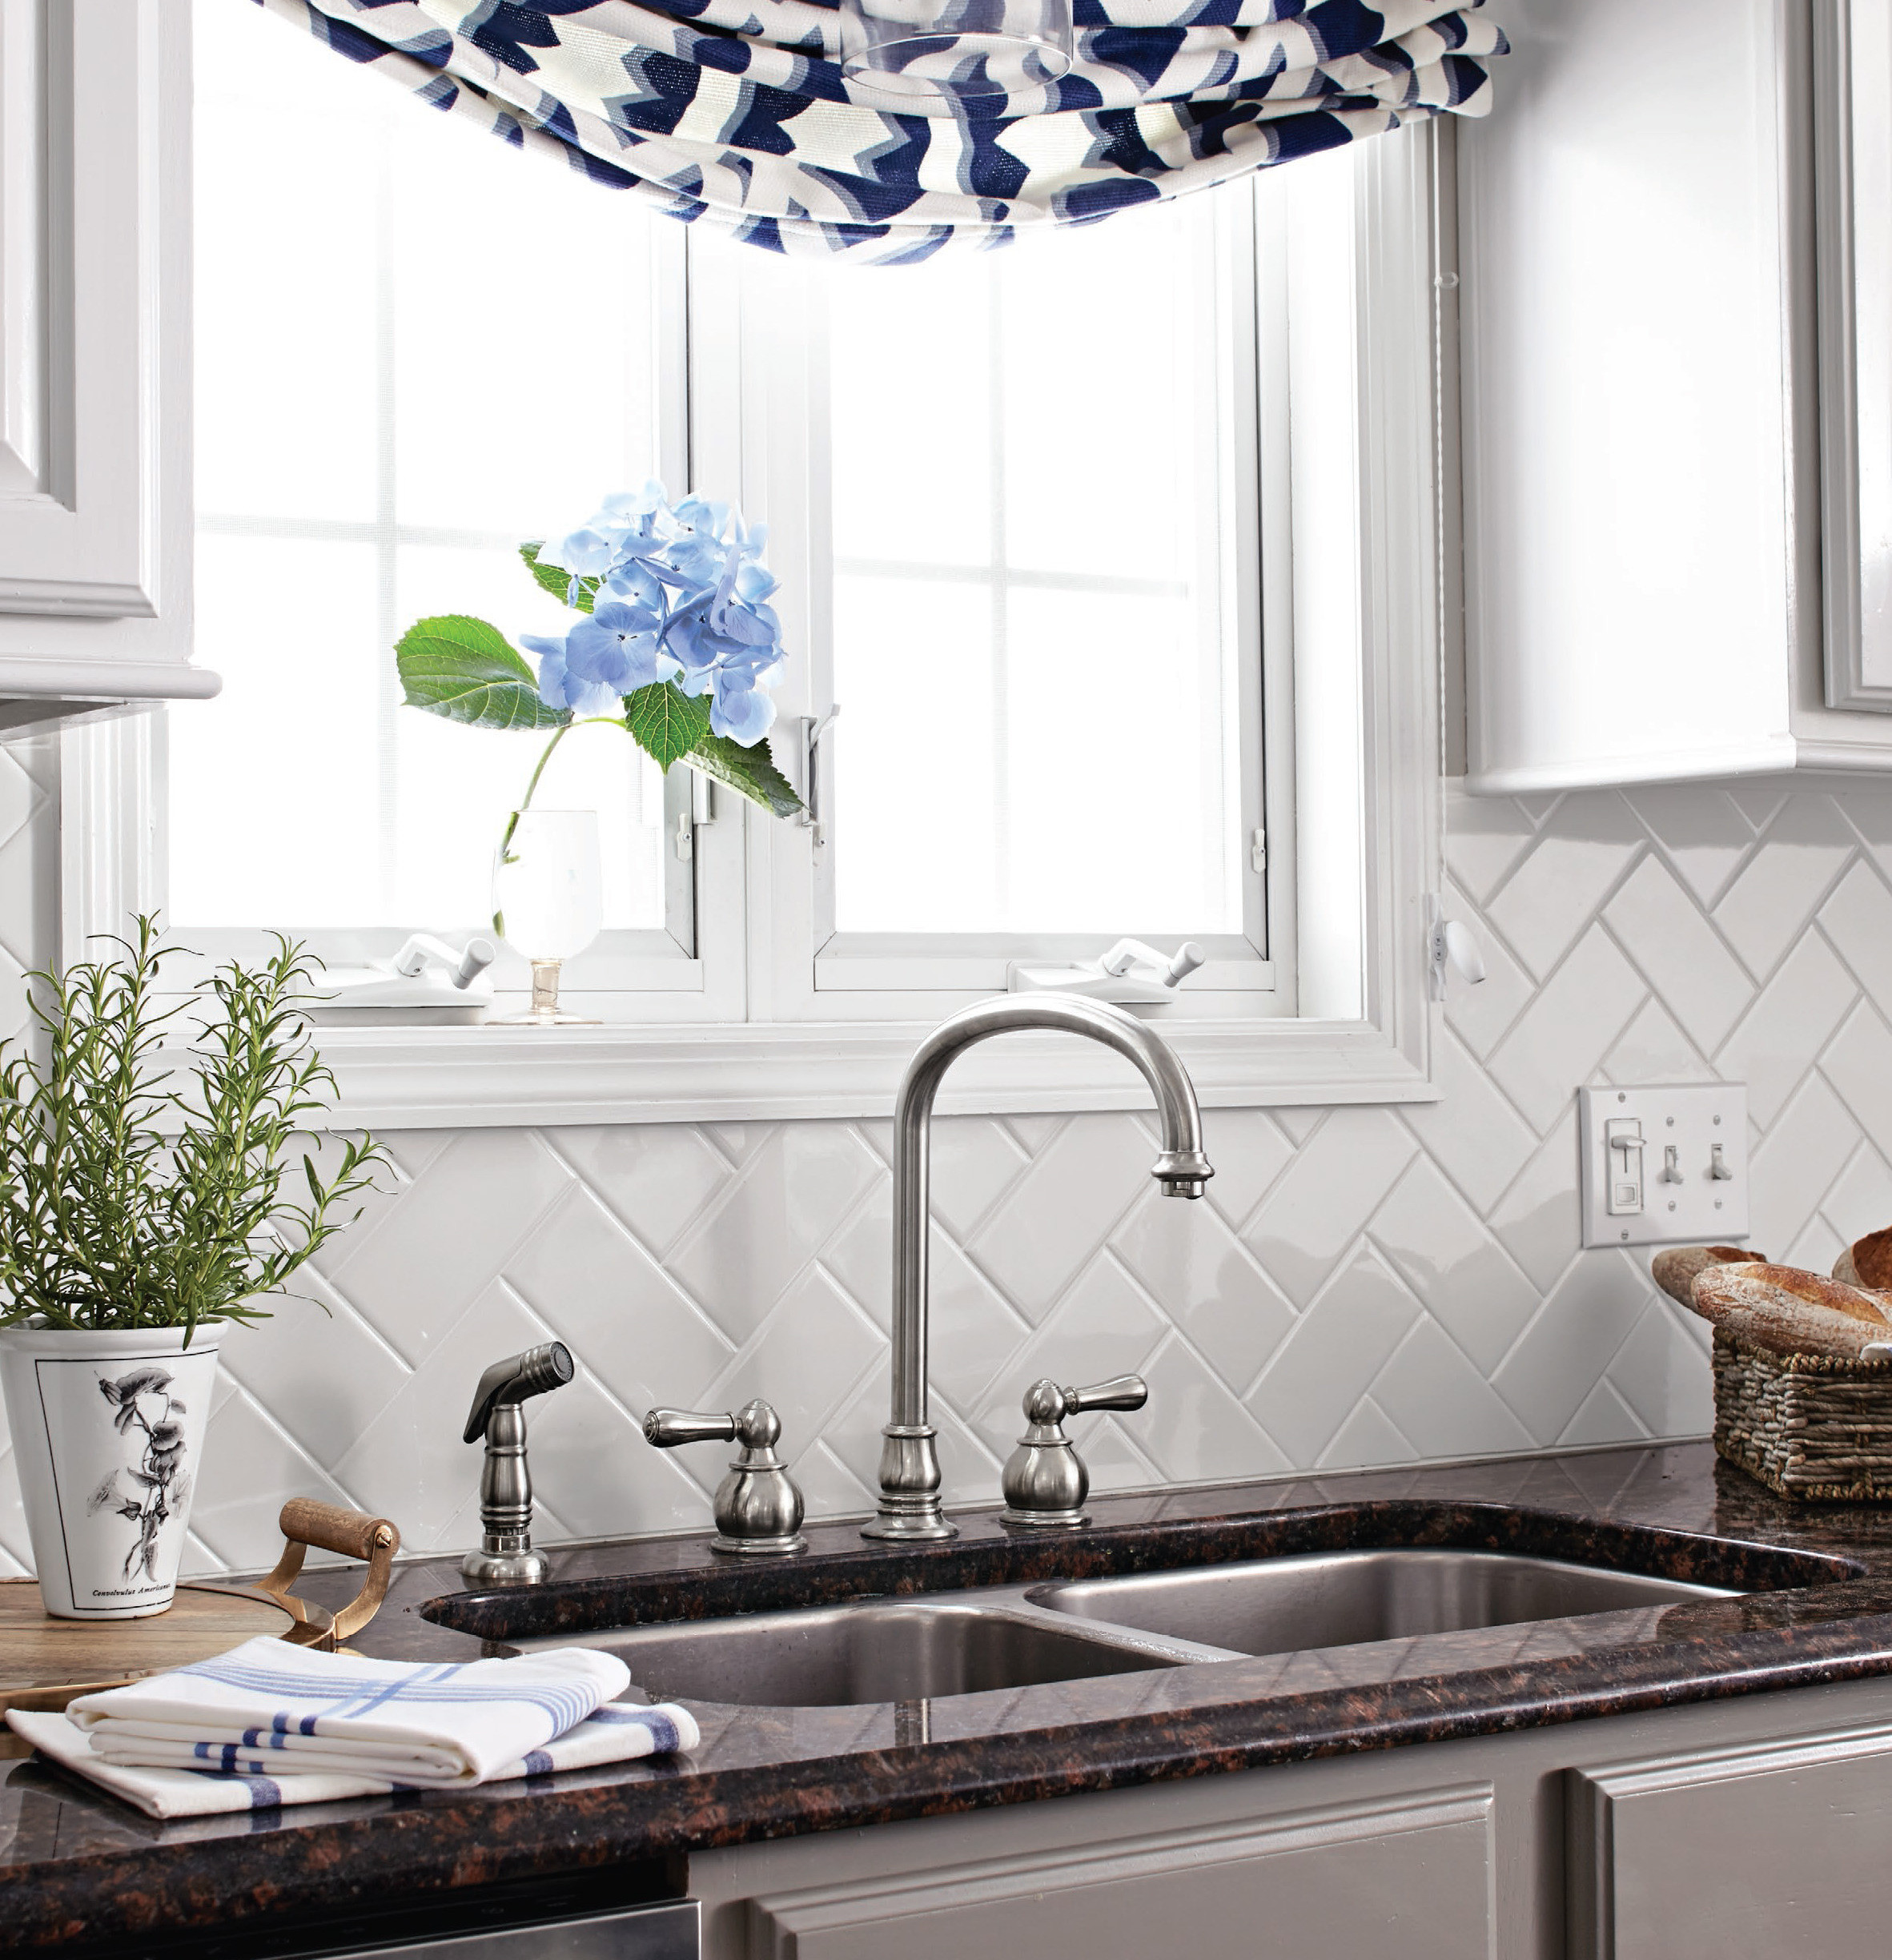 Kitchen Backsplash Tile
 Kitchen Tile Backsplash Options Inspirational Ideas